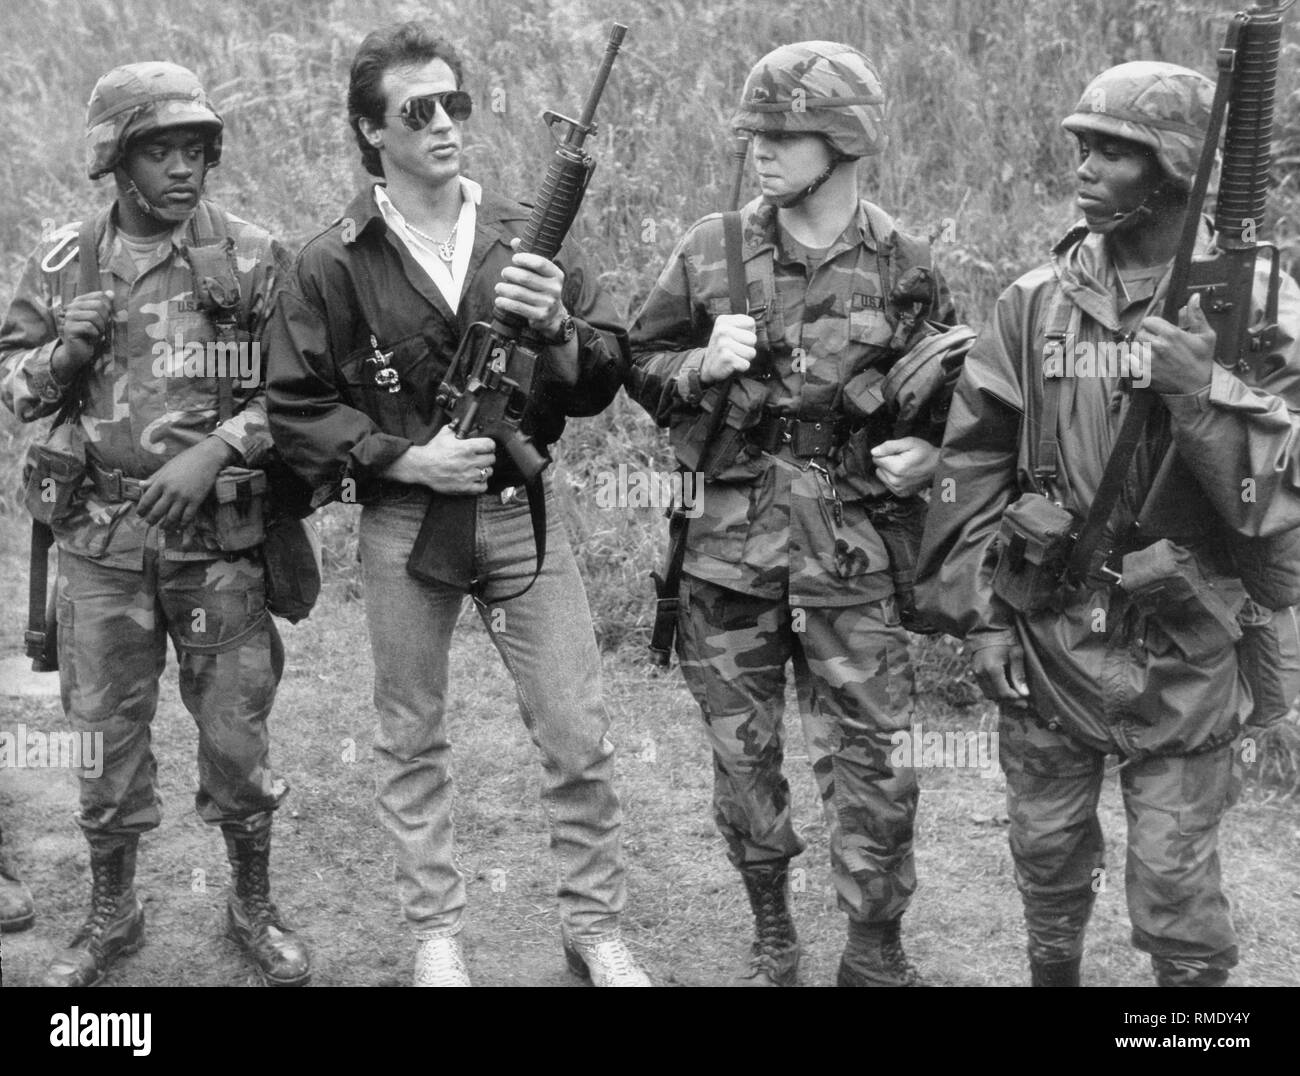 Der Schauspieler Sylvester Stallone Besuche amerikanischer Truppen in Berlin und erscheint, unter anderem mit einer M-16 Sturmgewehr. Stockfoto